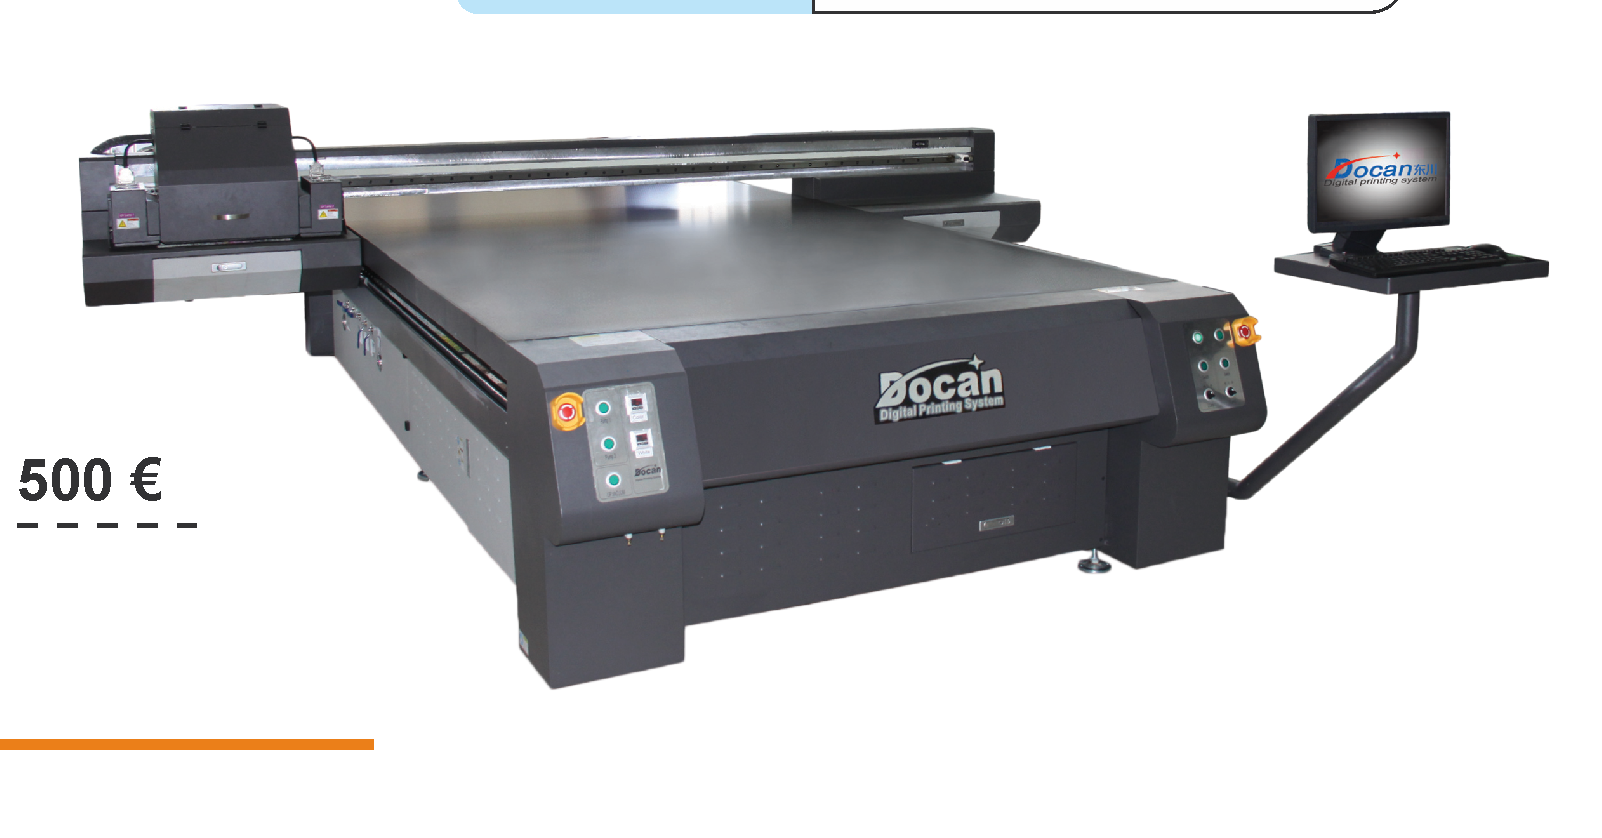 Docan UV M10 Yleistä Docan UV tasotulostimella voit tulostaa tasaisia, sekä epäsäännöllisen muotoisia esineitä.